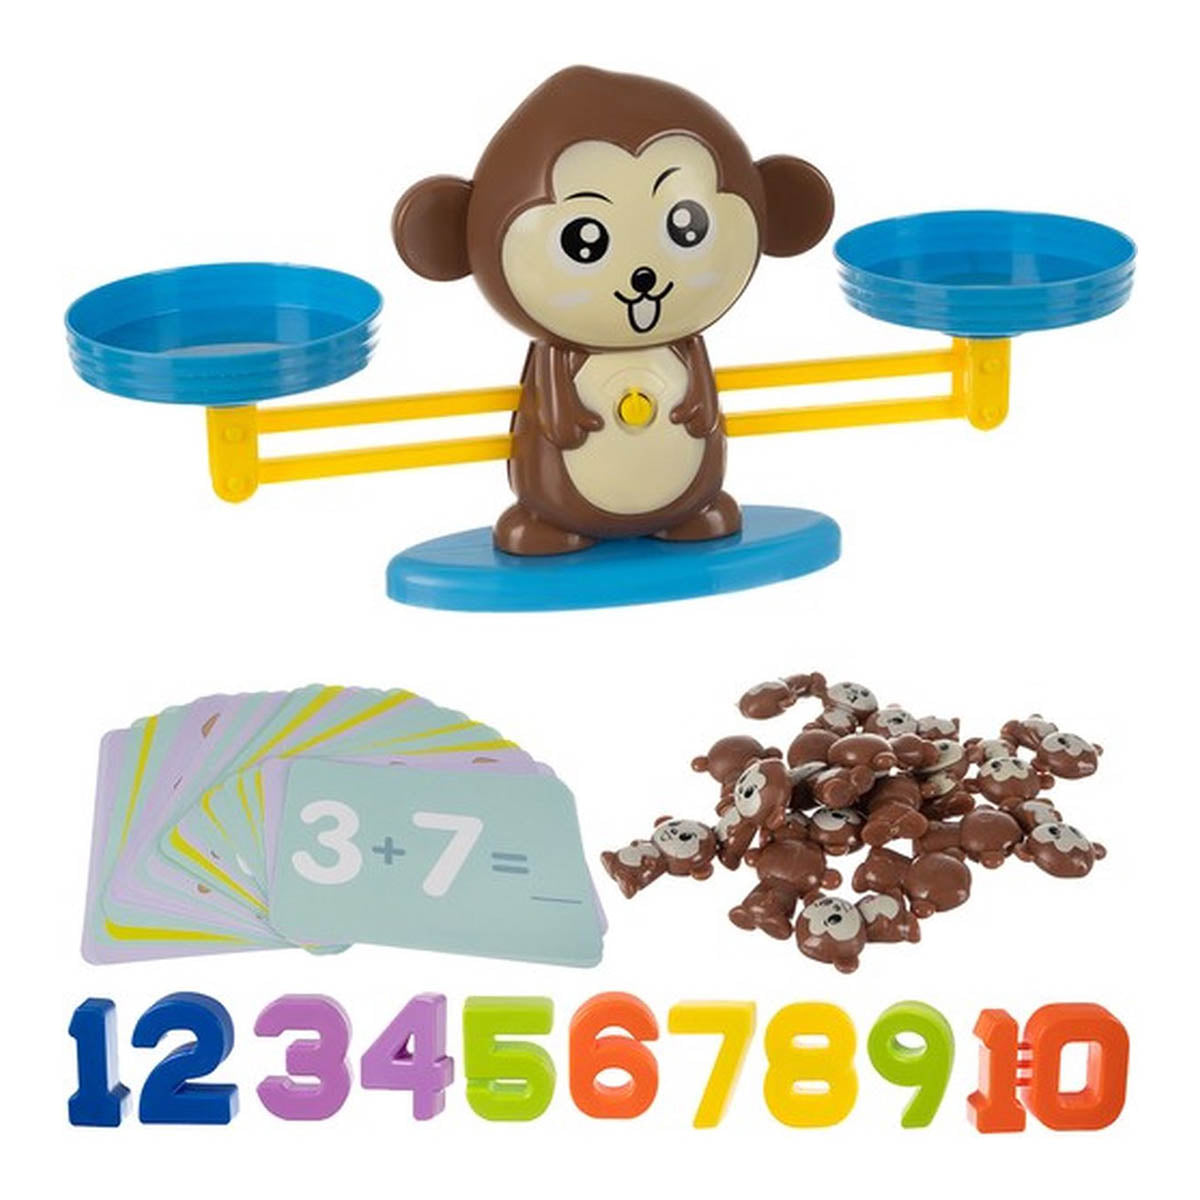 Ariko Montessori Reken Balans Spel Aap - Leren Rekenen - Interactief Speelgoed - Telraam - Reken weegschaal - Educatief